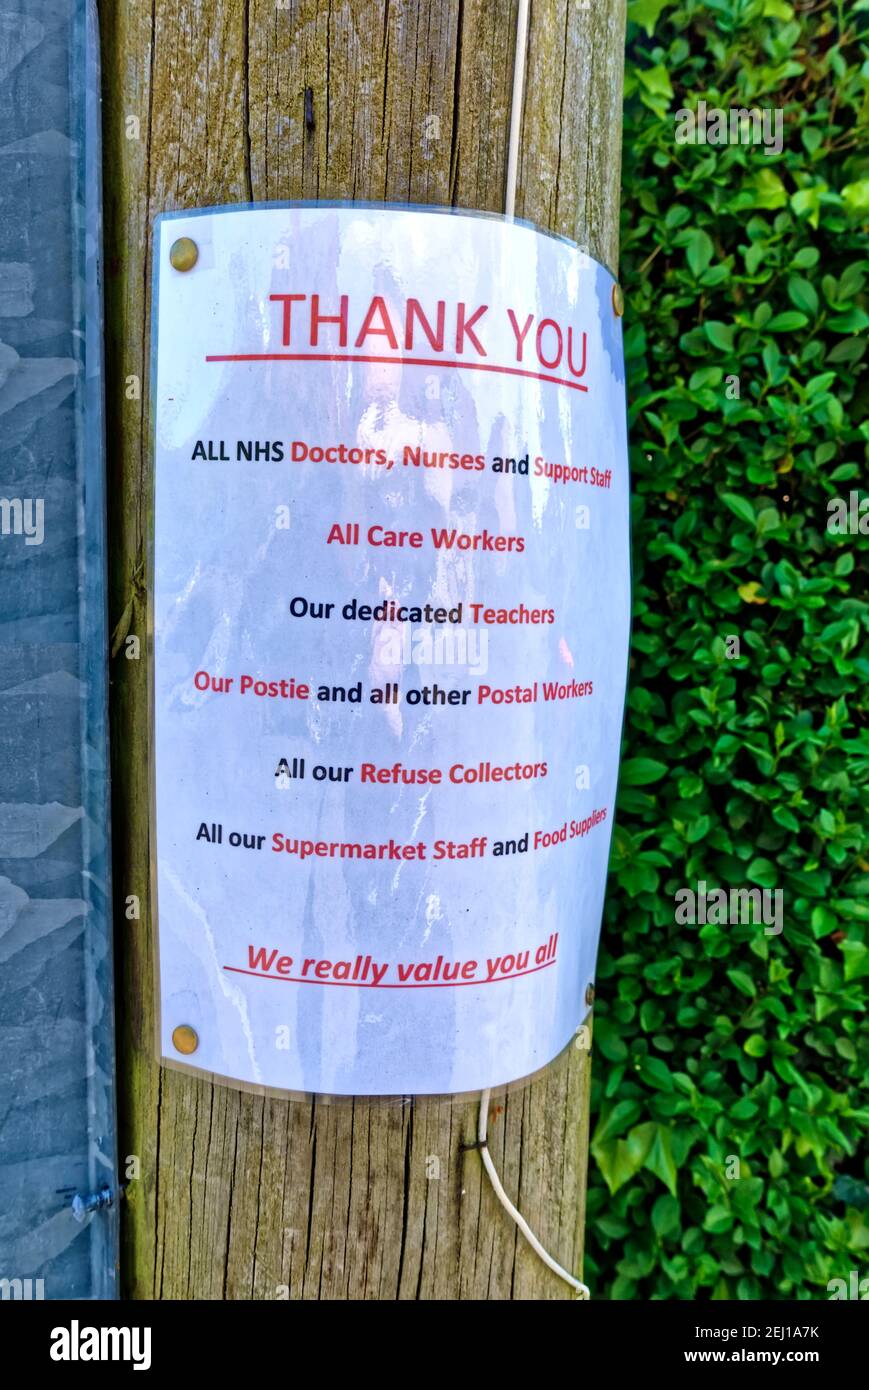 Warminster, Wiltshire / Reino Unido - 4 de mayo de 2020: Un aviso sobre un telégrafo que agradece a todos los trabajadores clave durante la crisis del Coronavirus Foto de stock